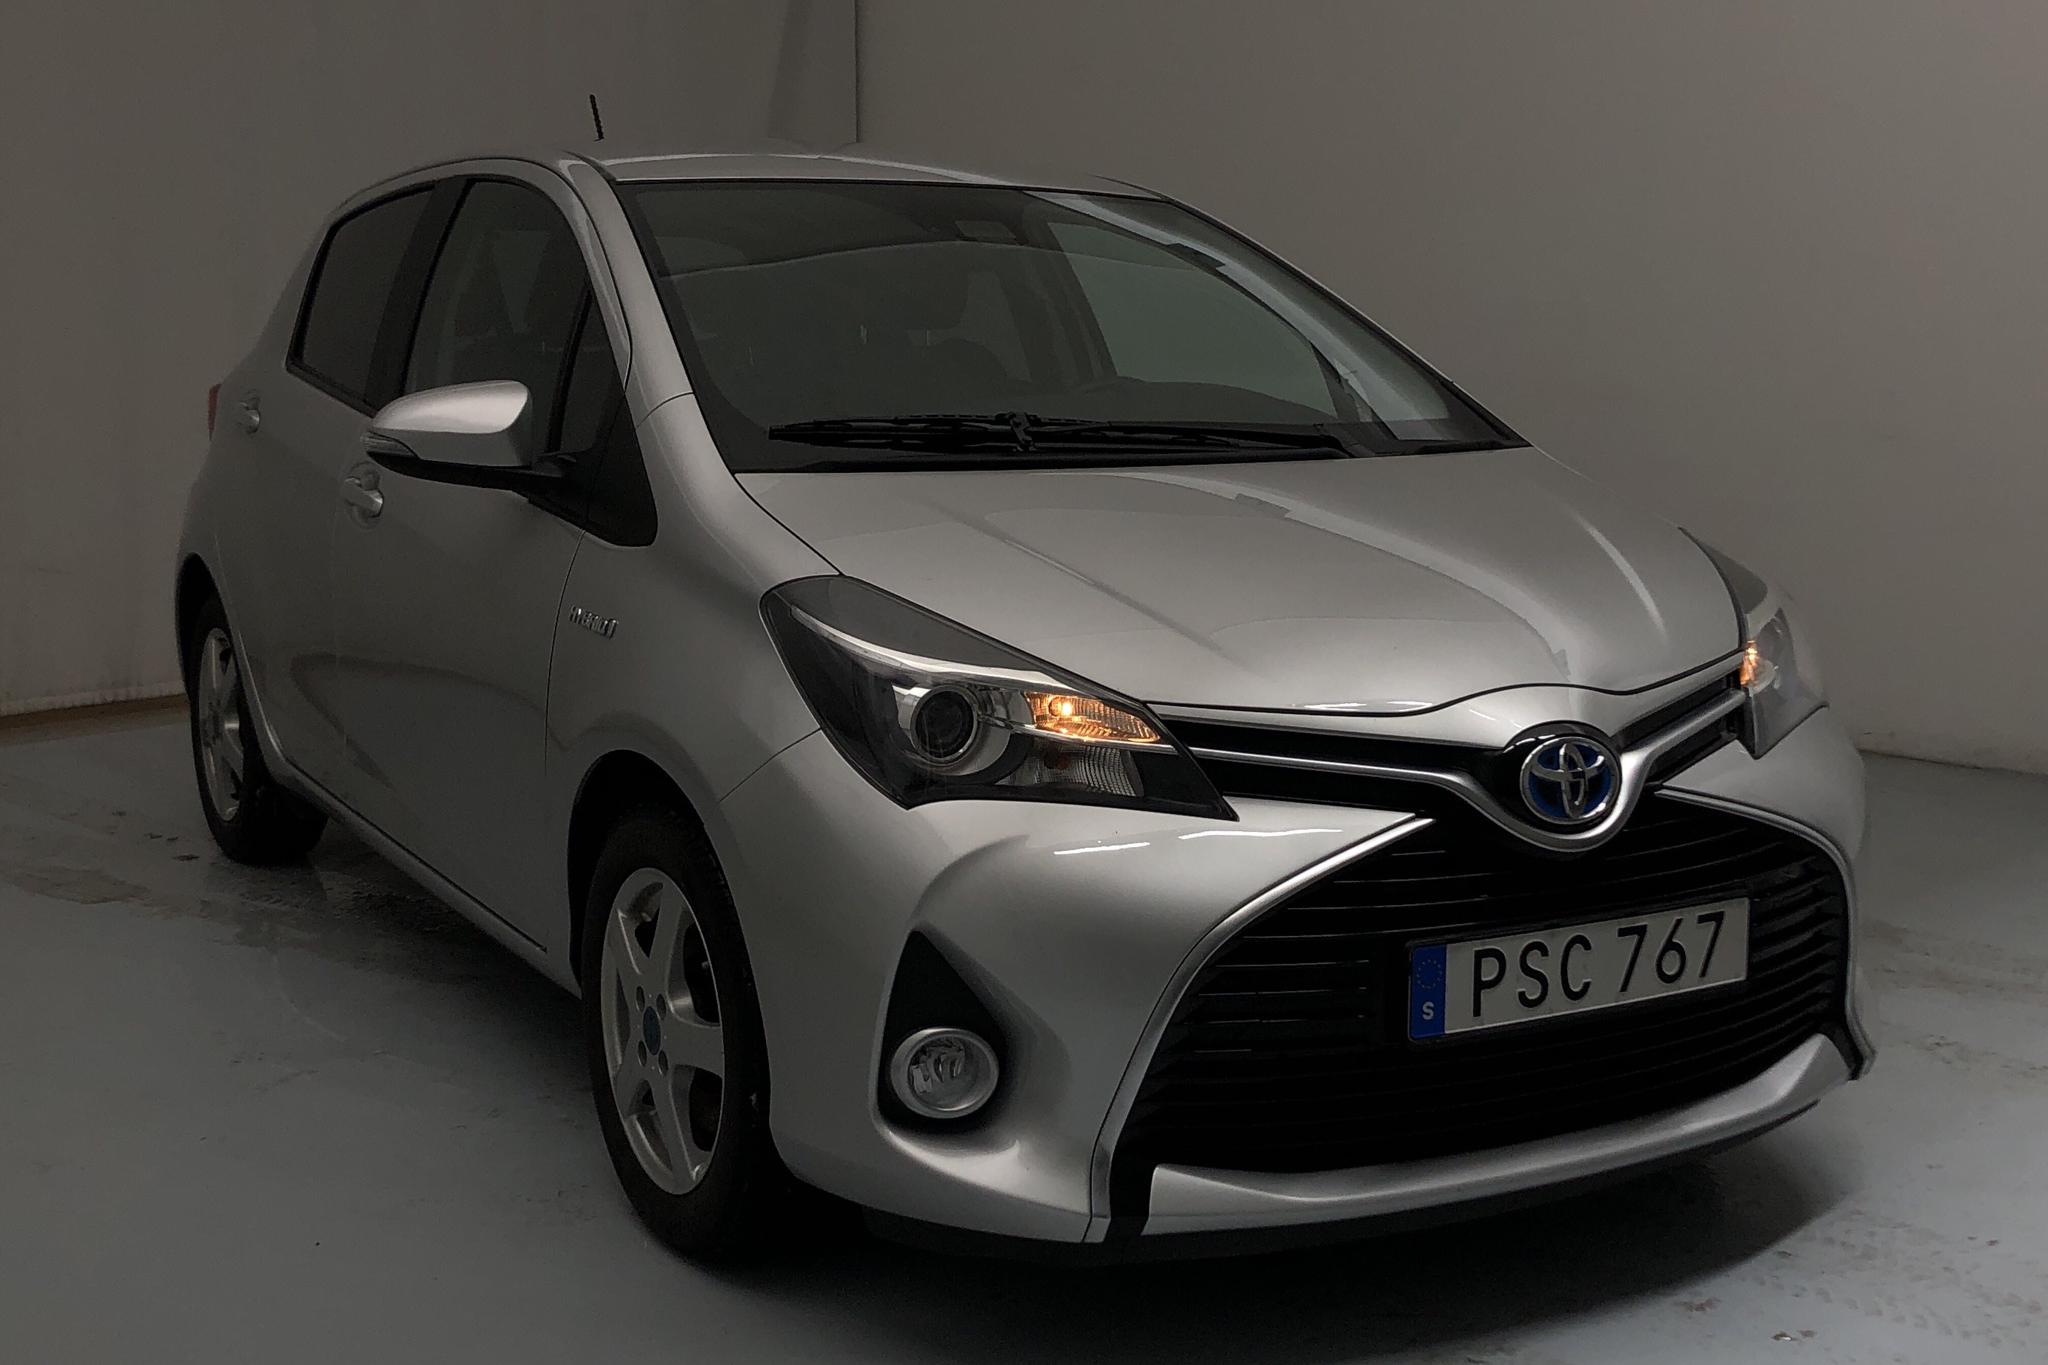 Toyota Yaris 1.5 HSD 5dr (75hk) - 3 978 mil - Automat - silver - 2015